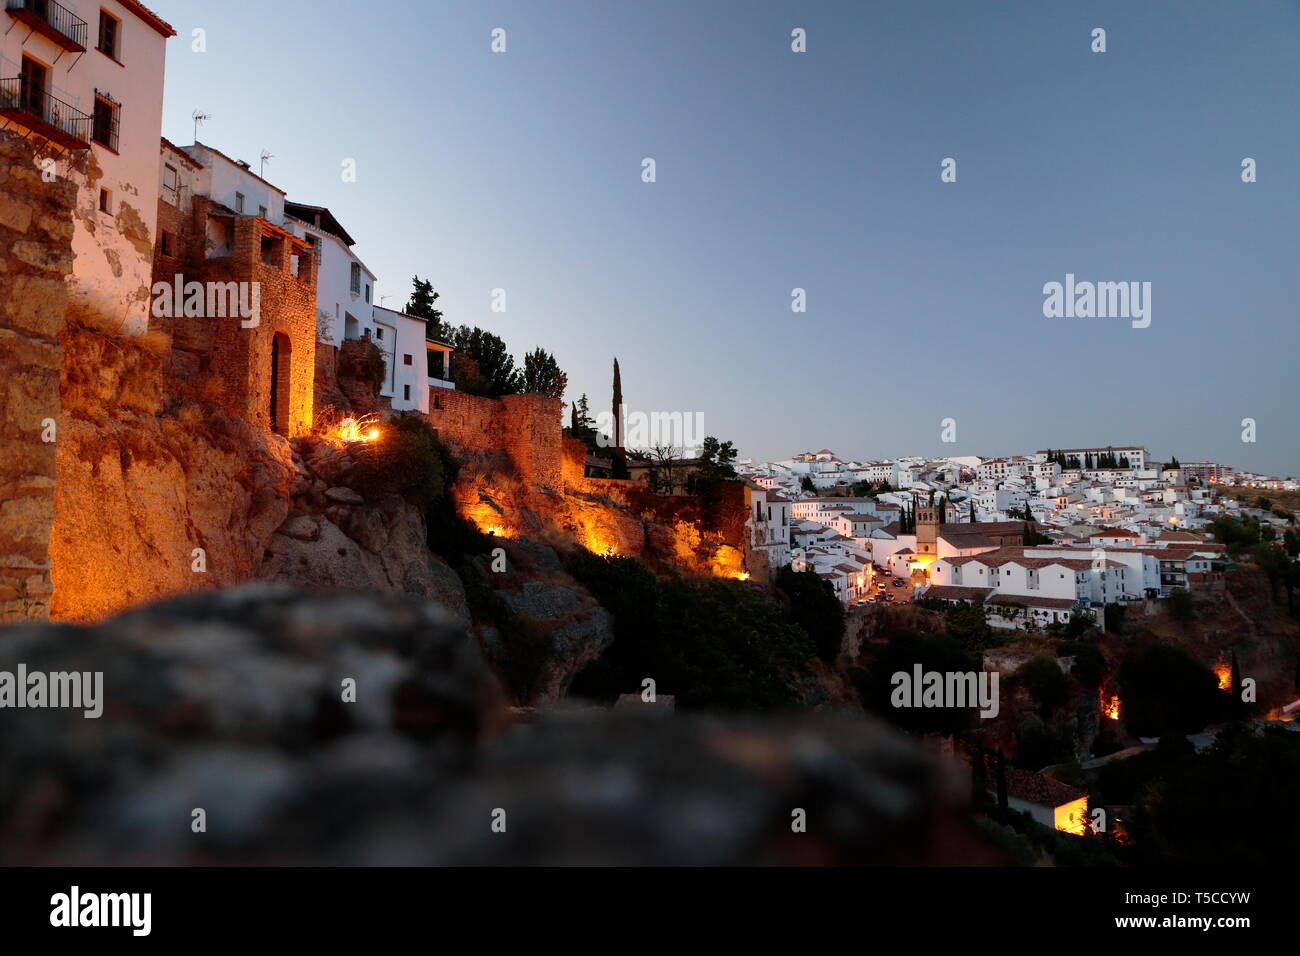 City of Ronda (Malaga) Spain Stock Photo